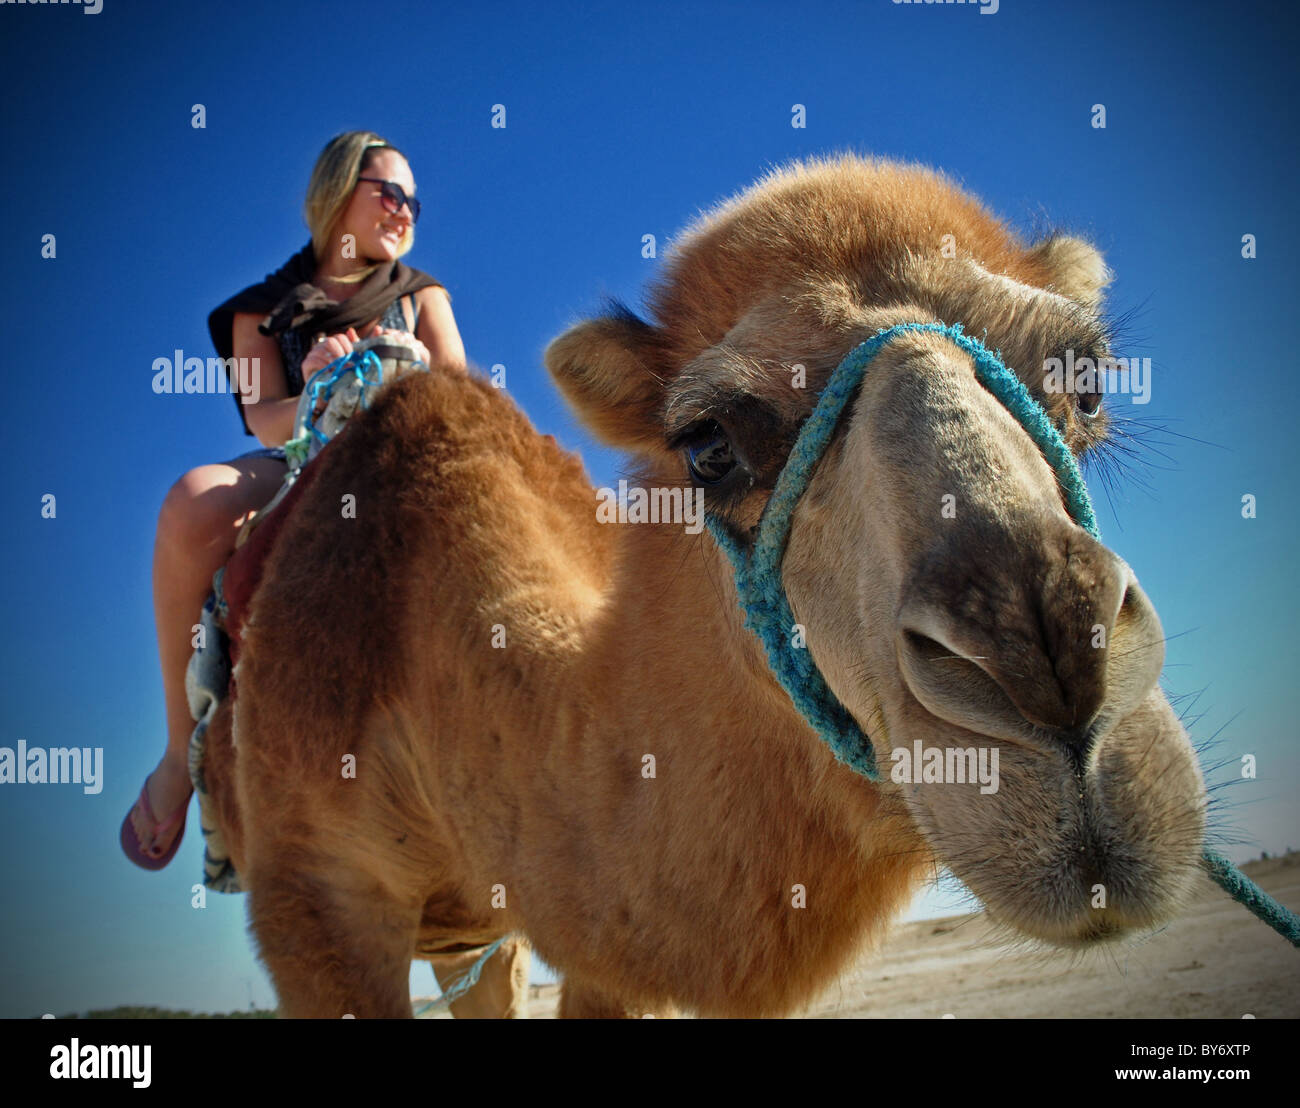 Tourist riding camel on Sahara desert excursion, Tunisia Stock Photo